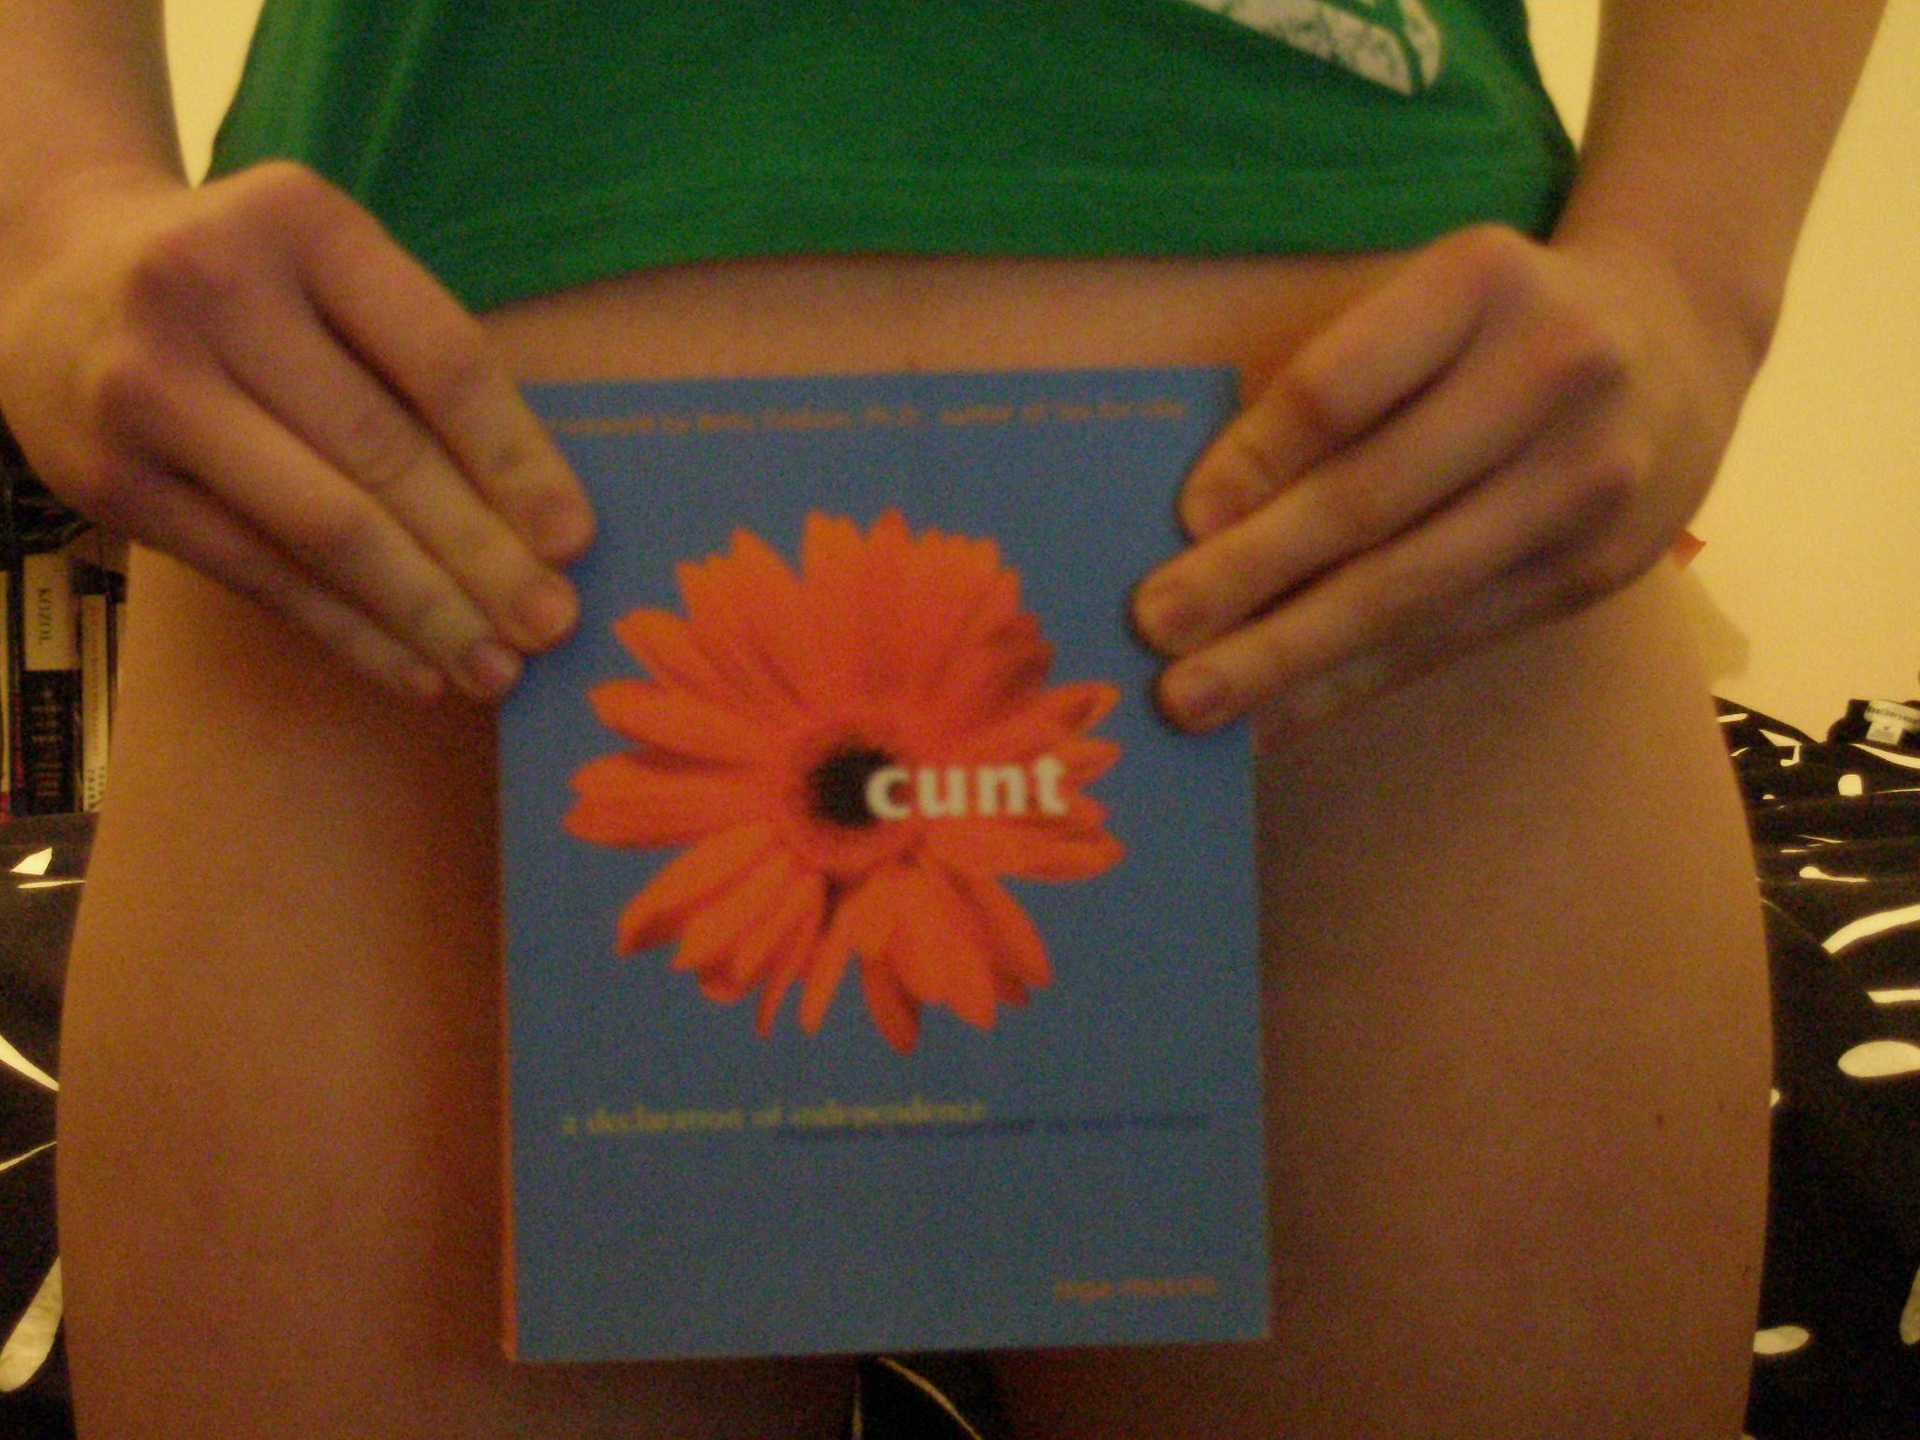 Selvportrett av kvinne med boken «Cunt» foran kjønnsorganet